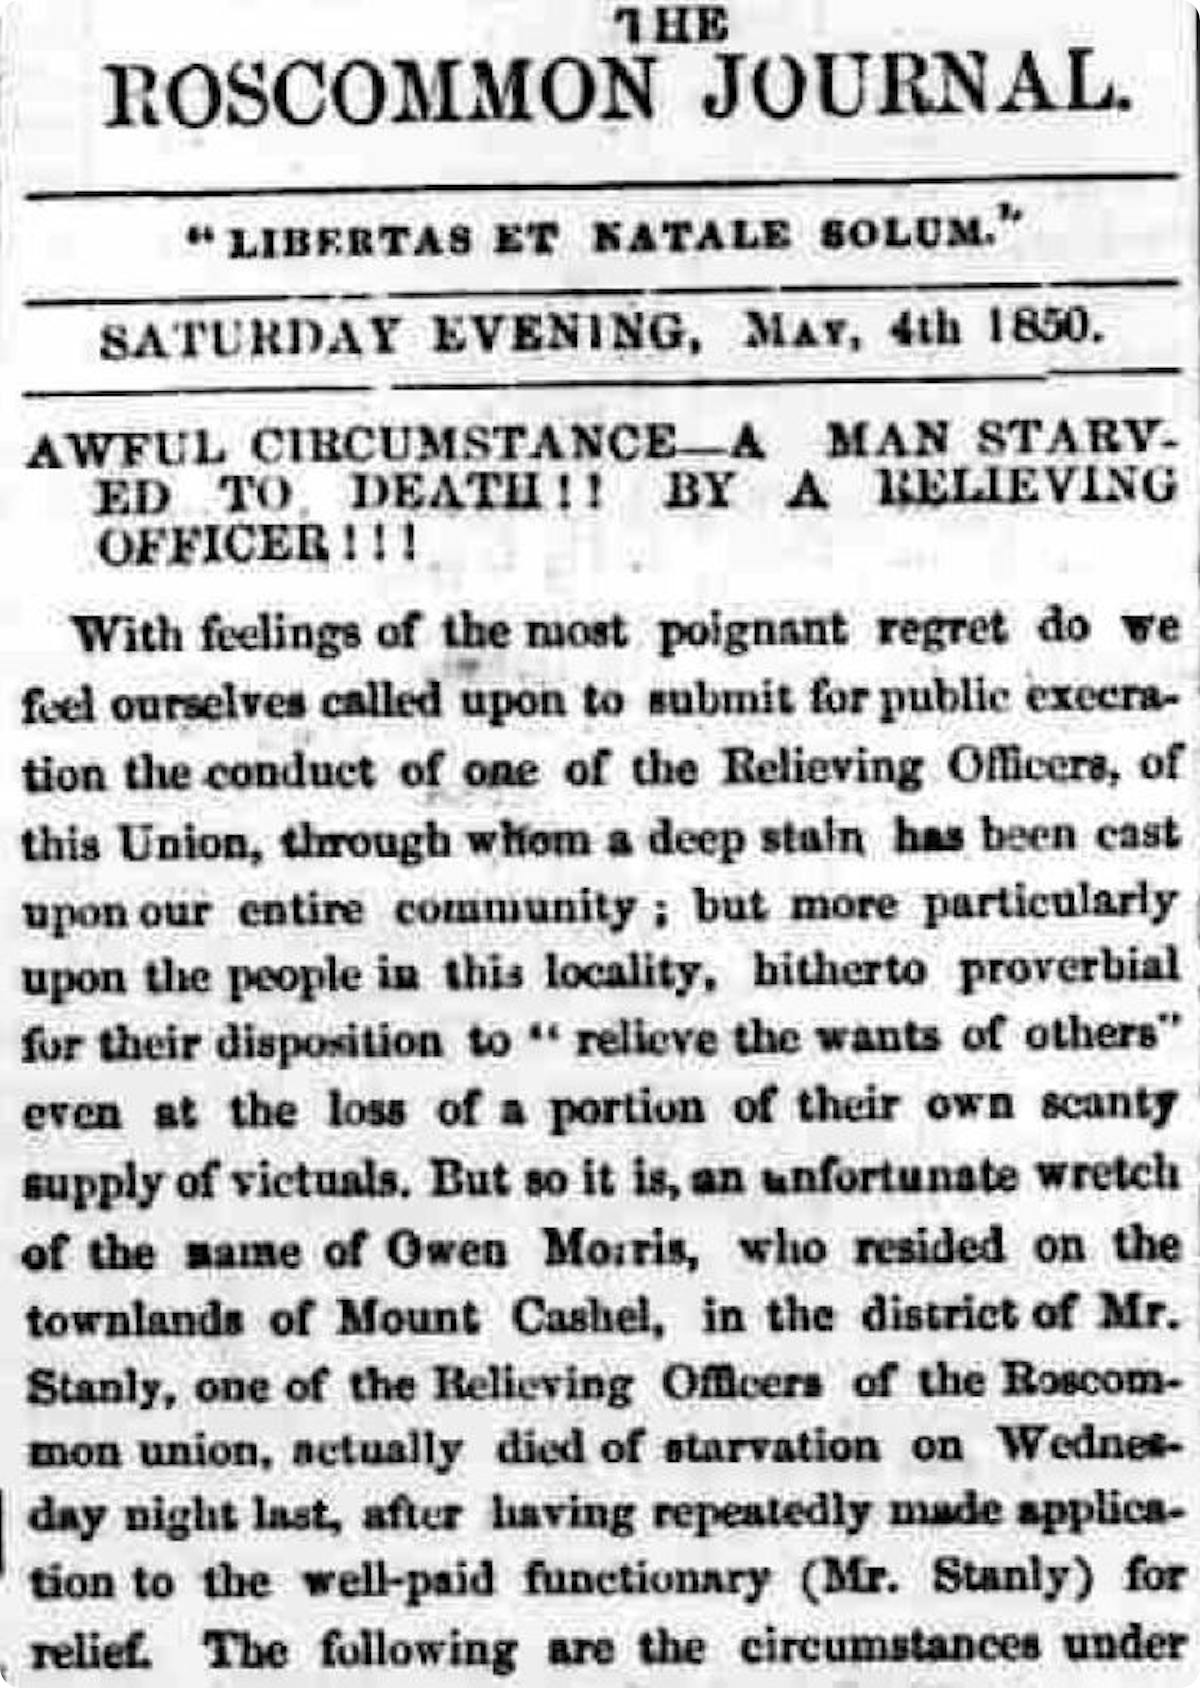 Irish Famine newspaper reports